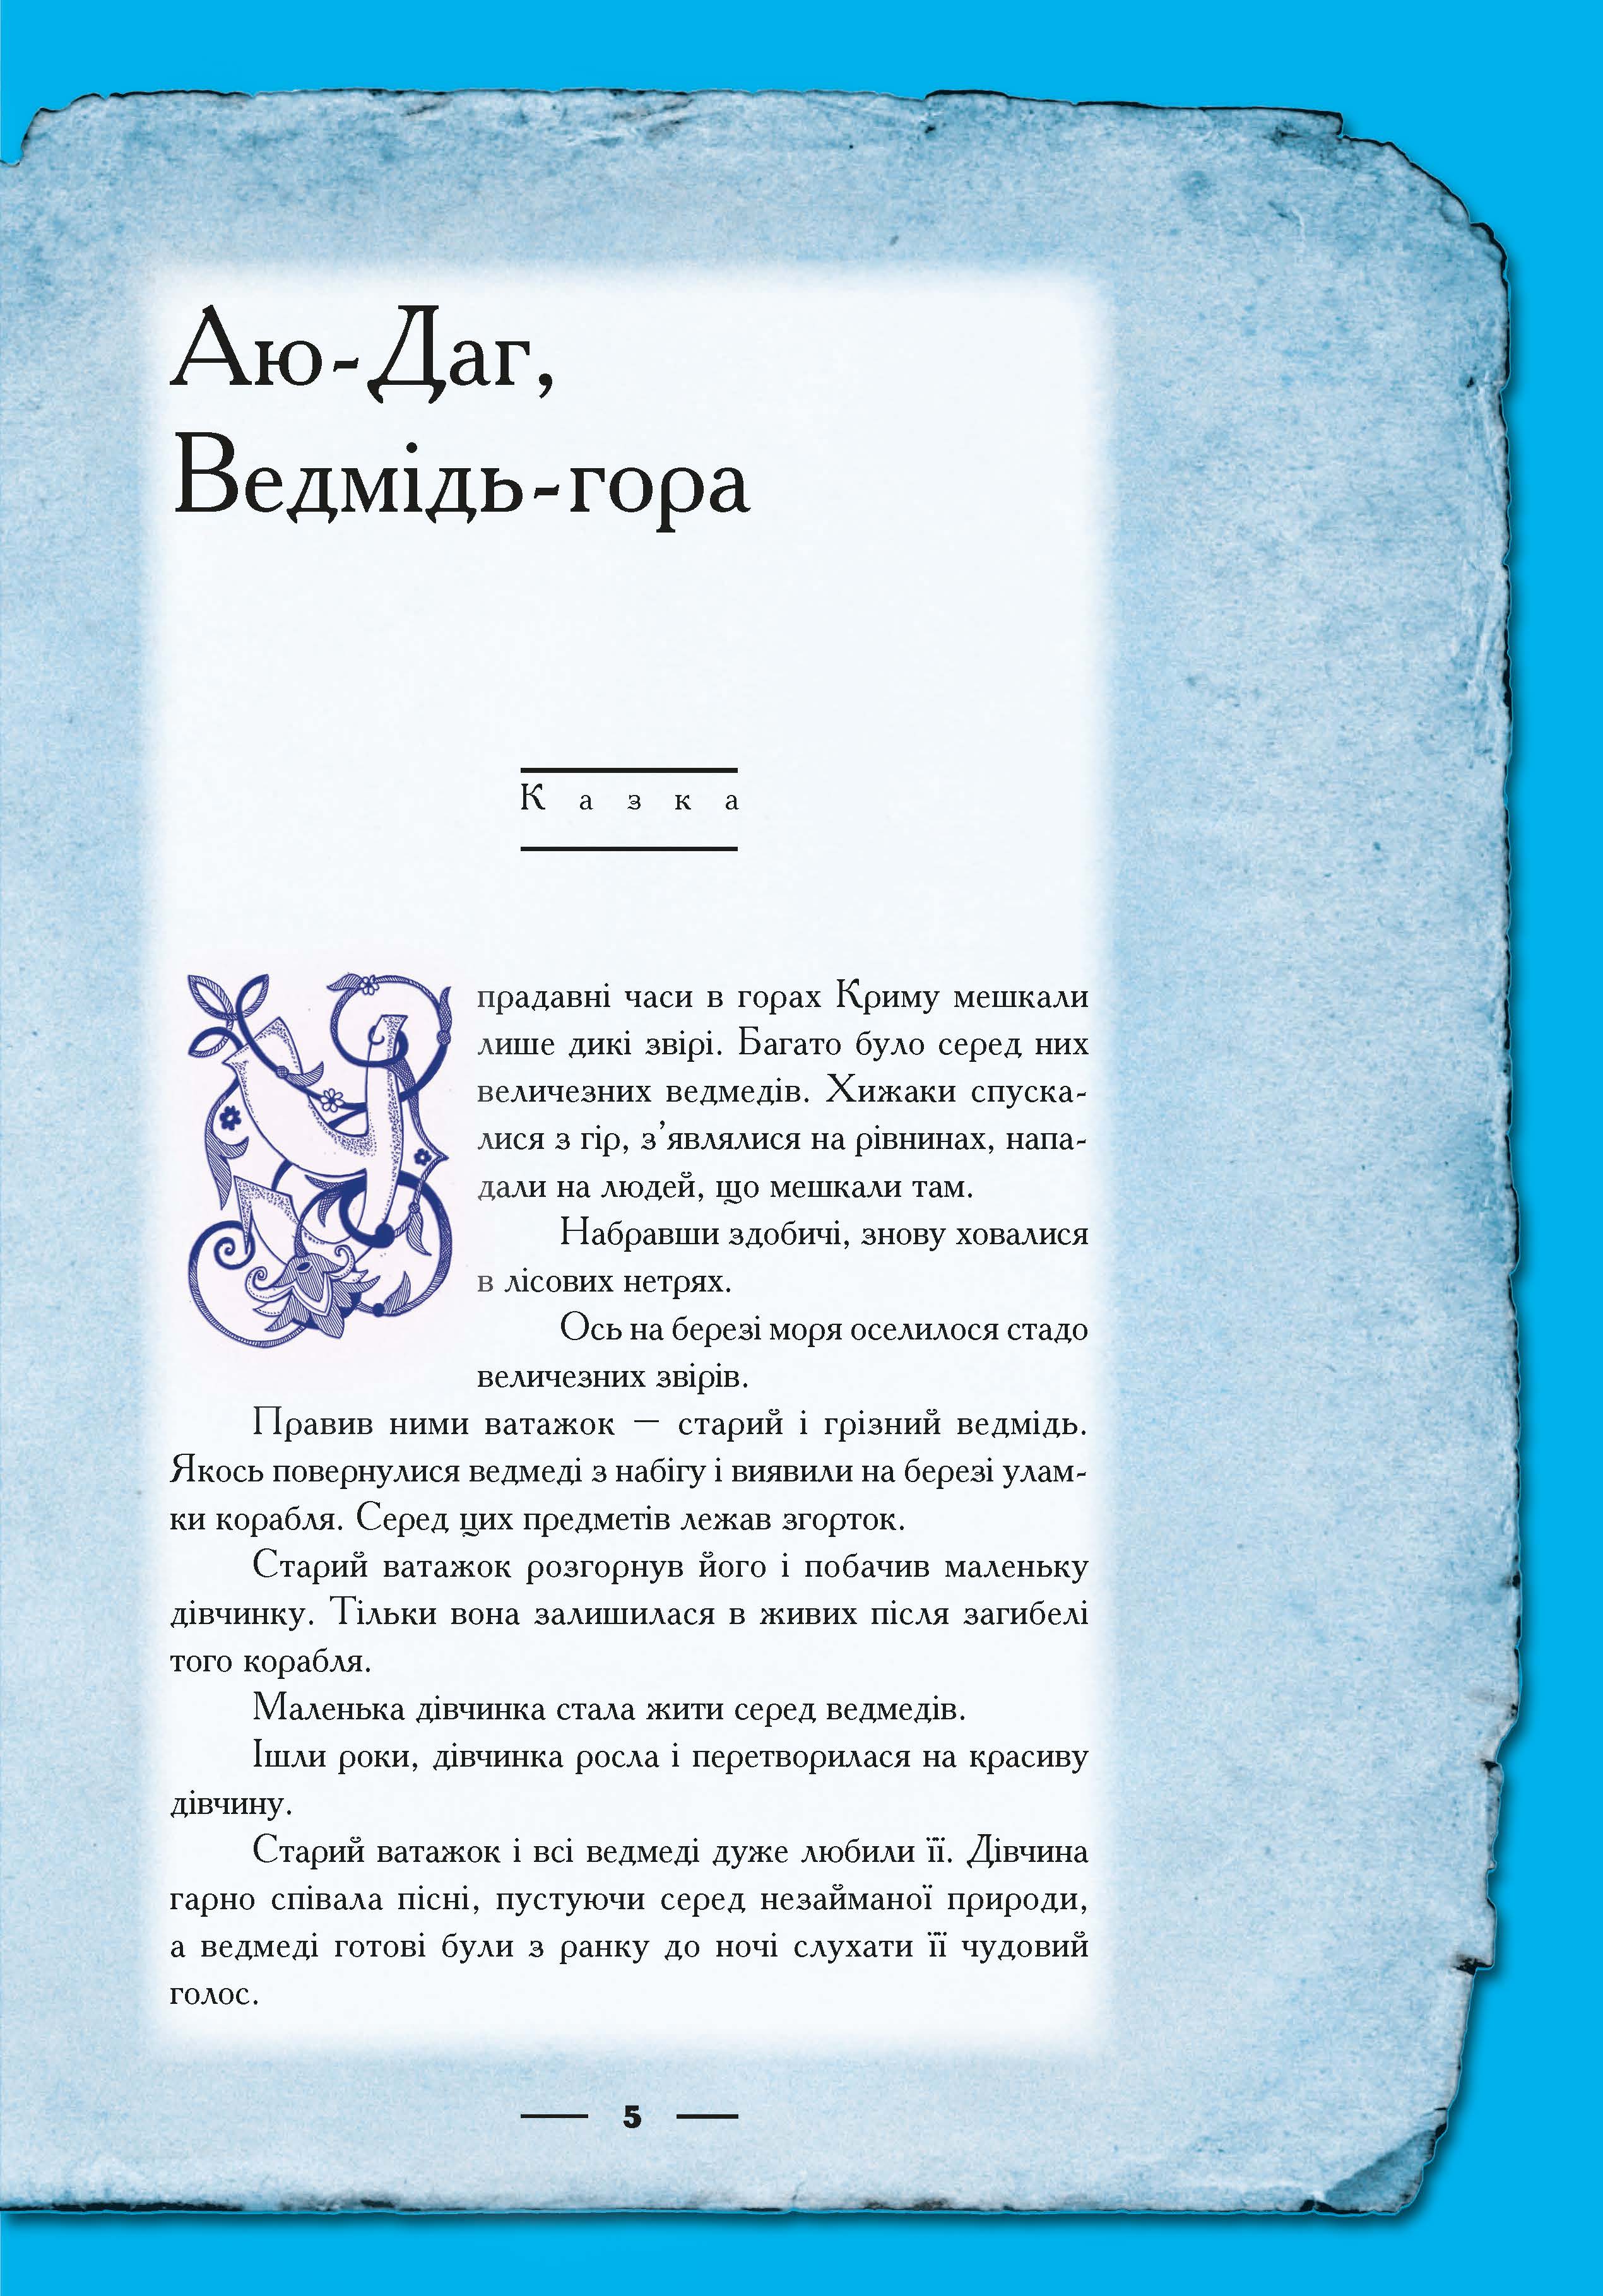 Крим: енциклопедія, казка, гра